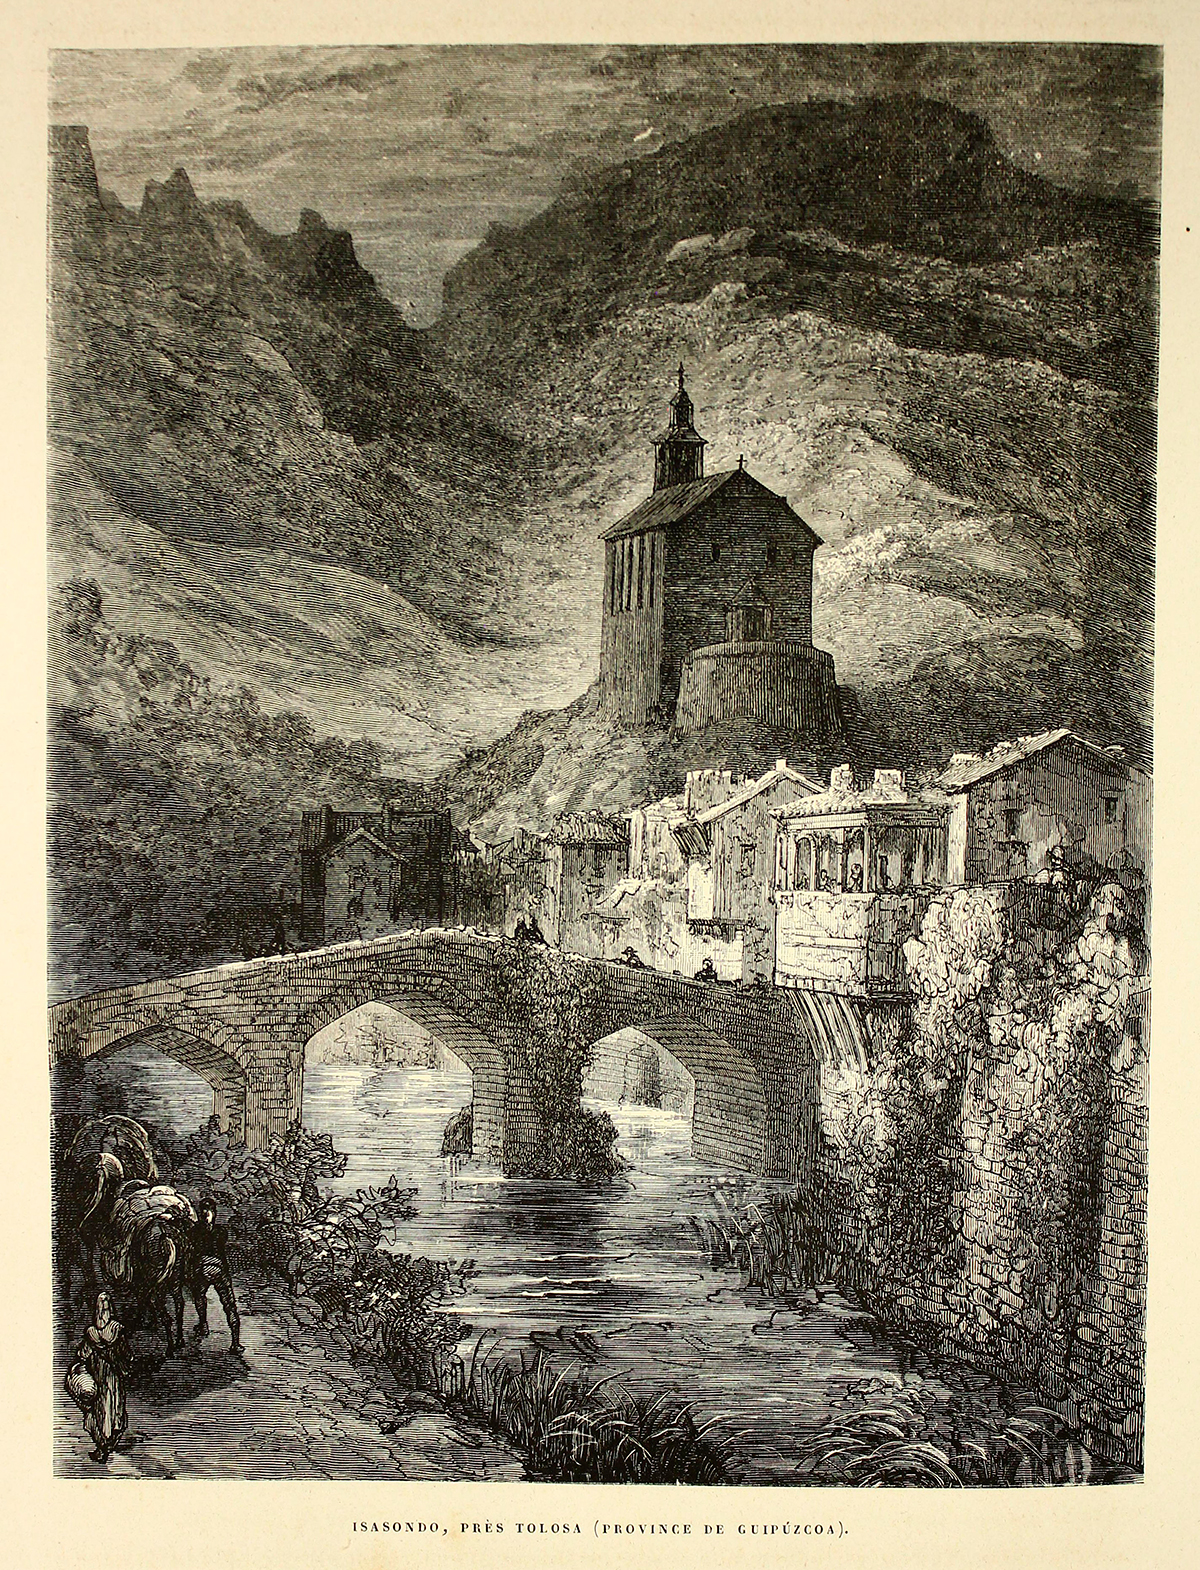 Tolosa en el siglo XIX